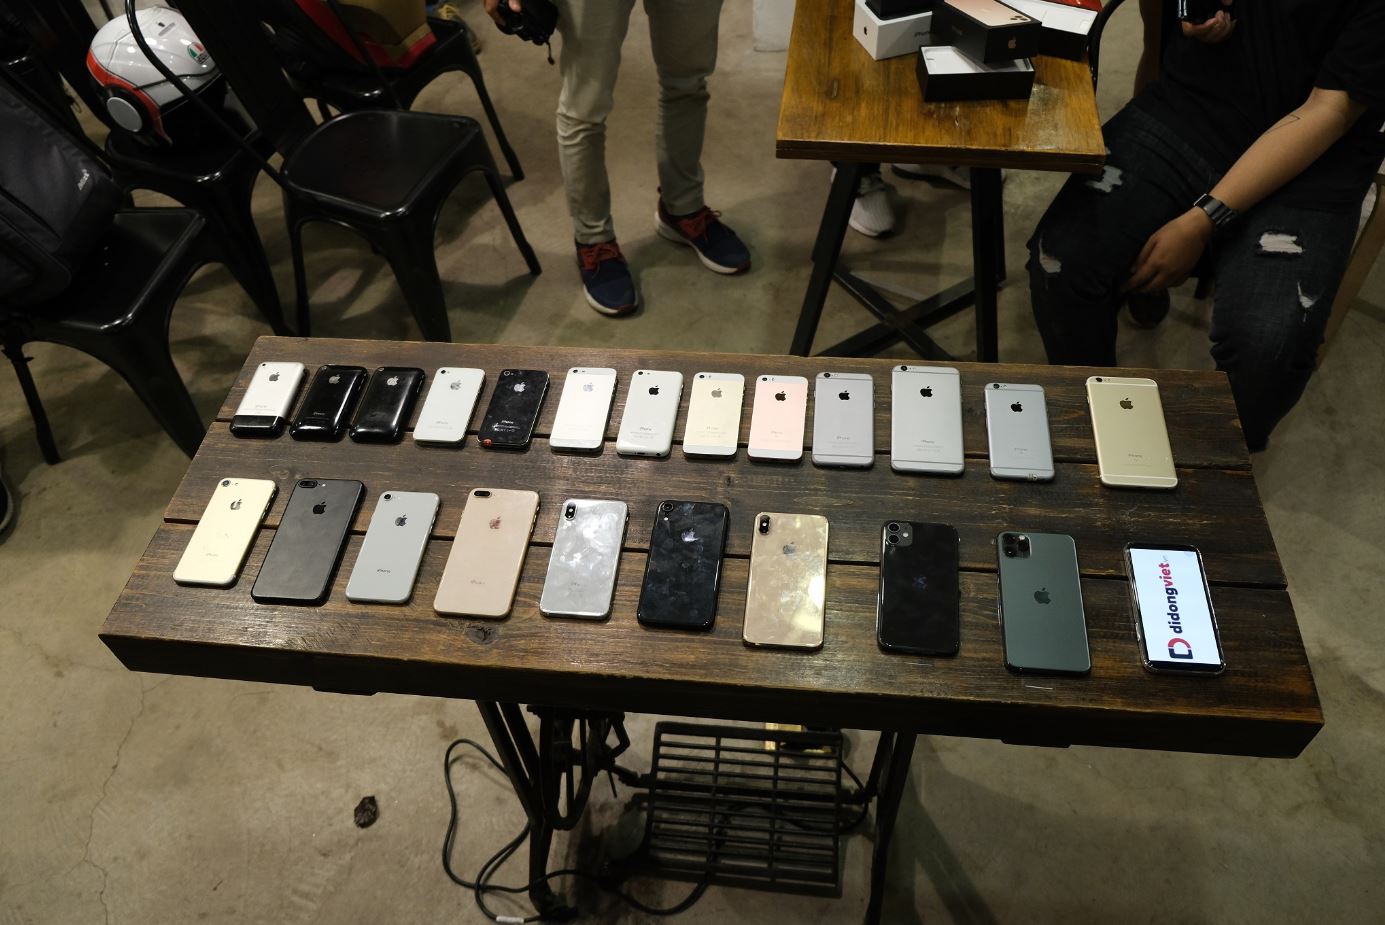 Người dùng Việt trải nghiệm trực tiếp những chiếc iPhone 11 đầu tiên cùng Di Động Việt